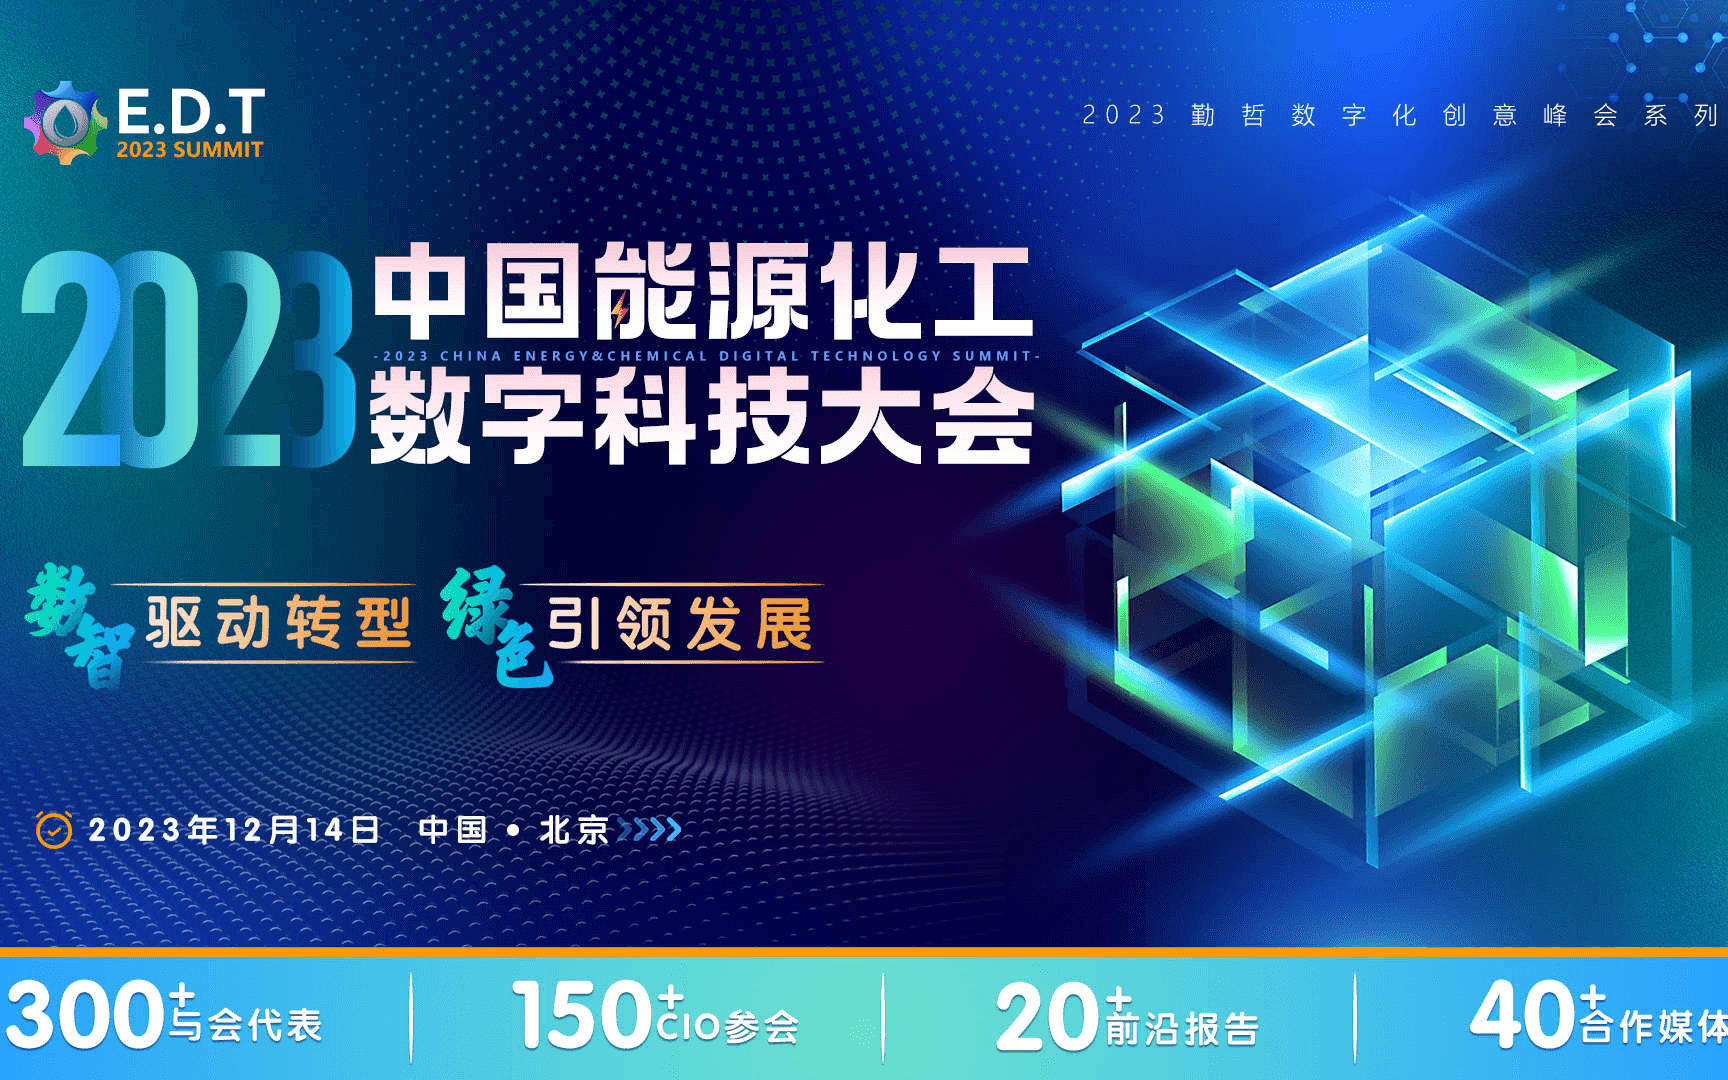 EDT 2023 中国能源化工数字科技大会